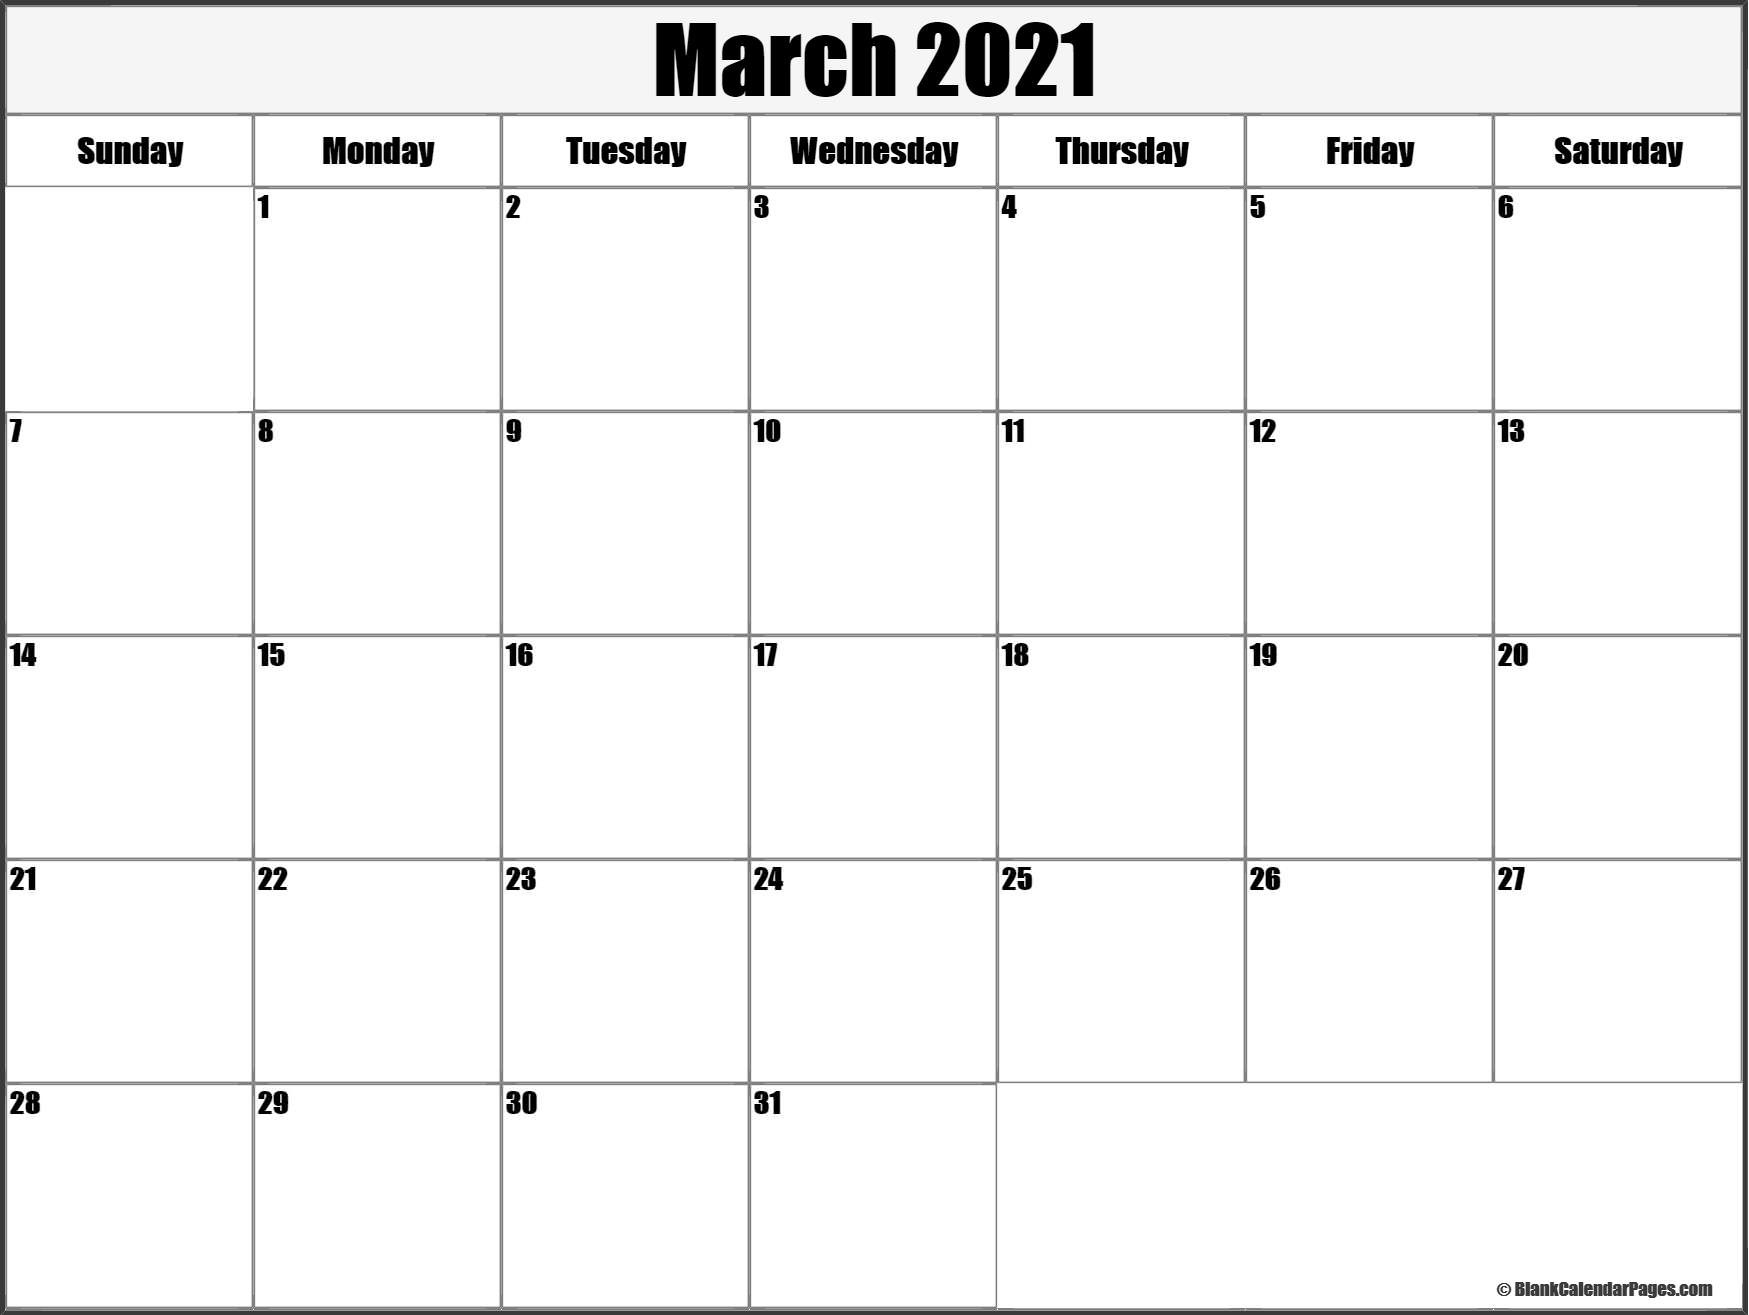 March 2021 Blank Calendar Collection.-March 2021 Calendar